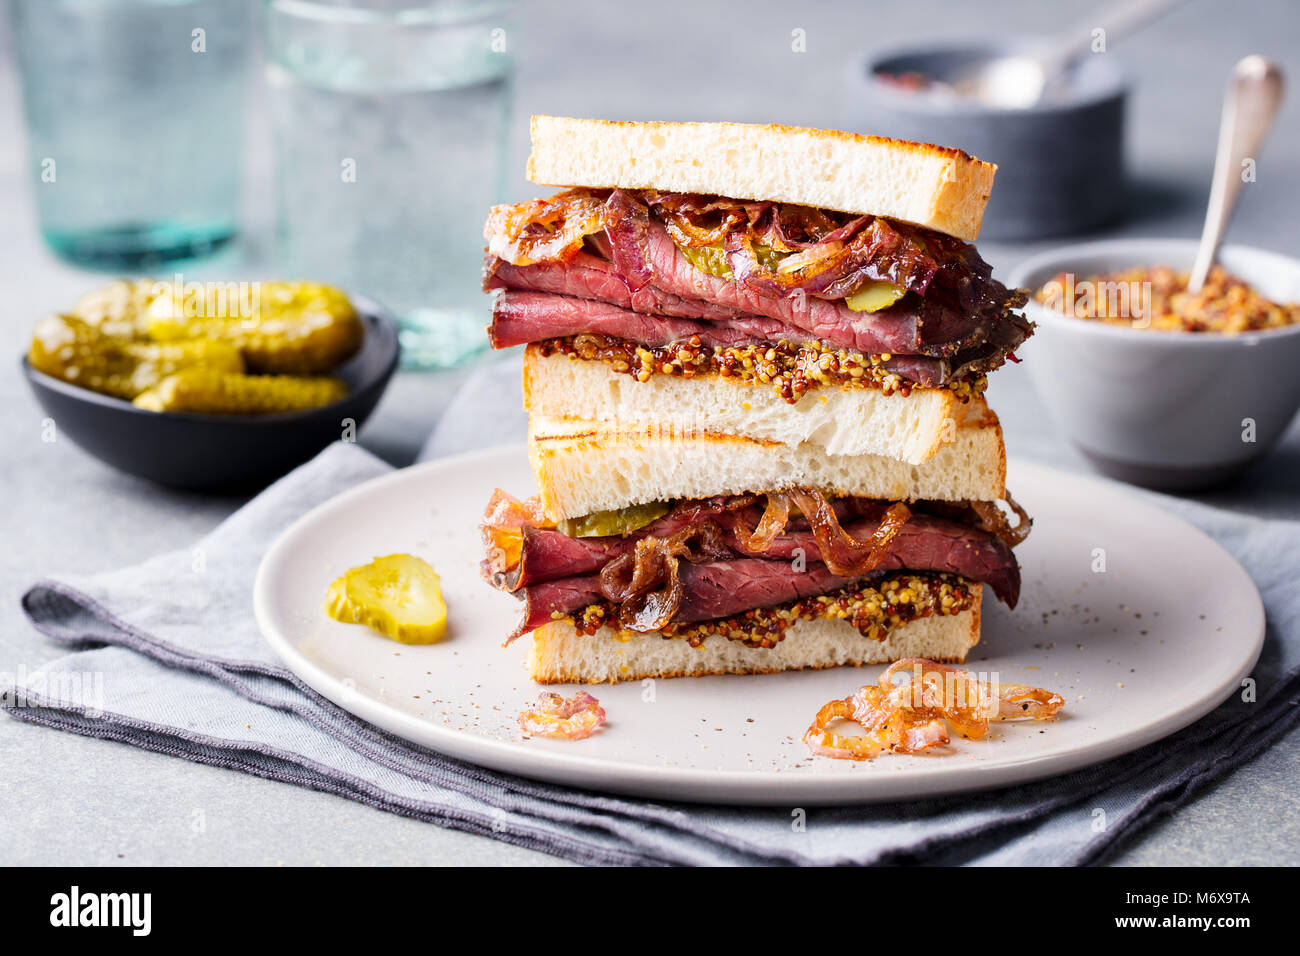 Sandwich au rôti de boeuf sur une plaque avec des pickles. Banque D'Images